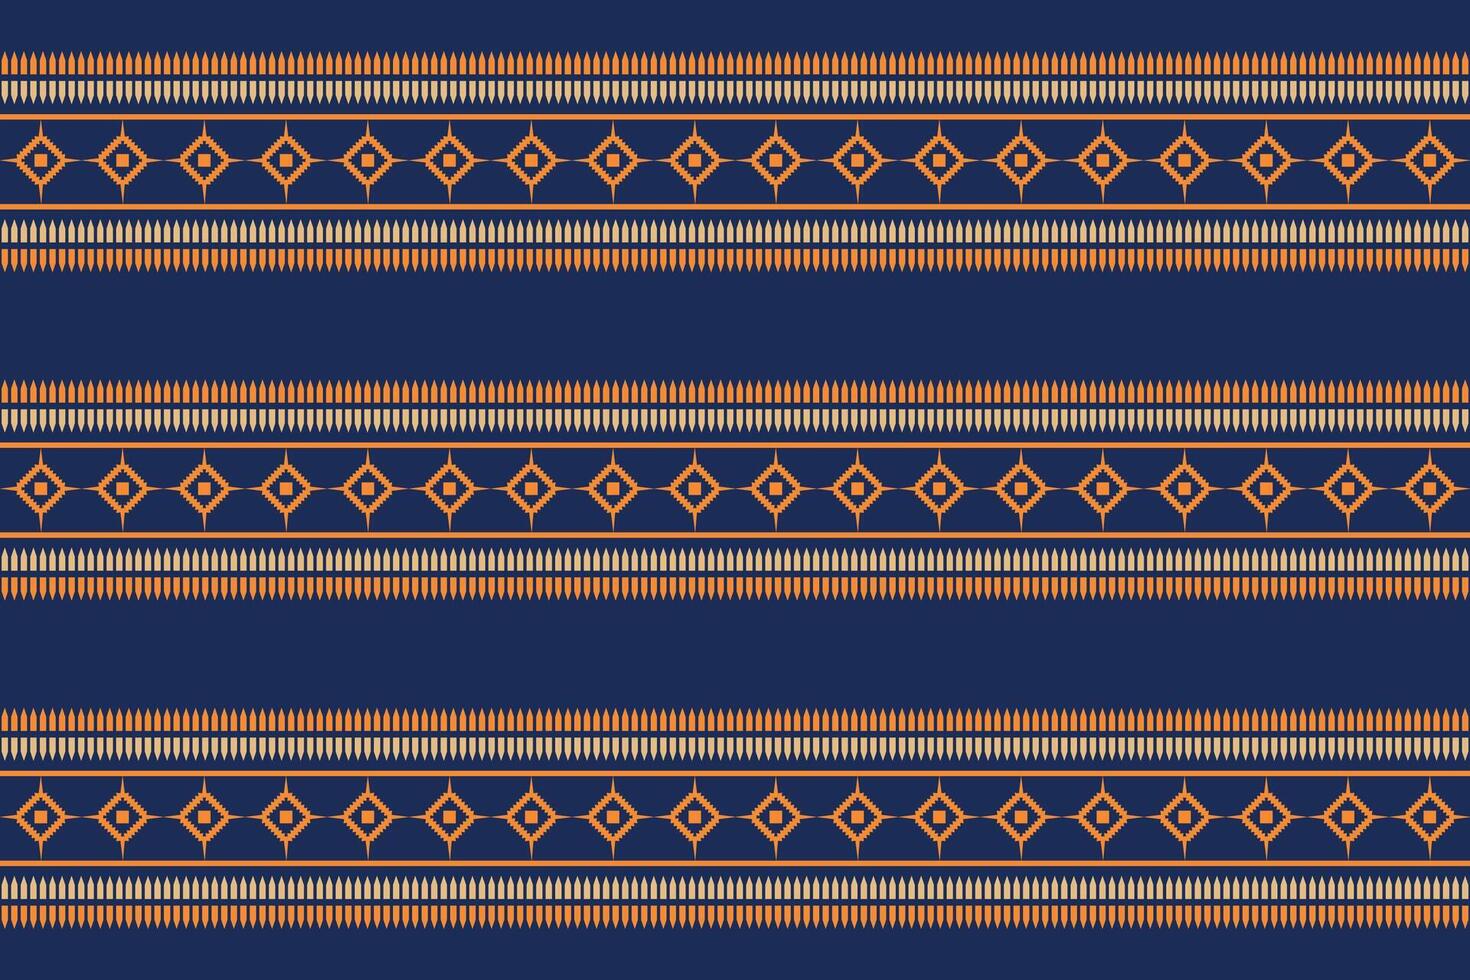 traditioneel etnisch ikat motief kleding stof patroon meetkundig stijl.afrikaans ikat borduurwerk etnisch oosters patroon blauw achtergrond behang. abstract,vector,illustratie.textuur,frame,decoratie. vector